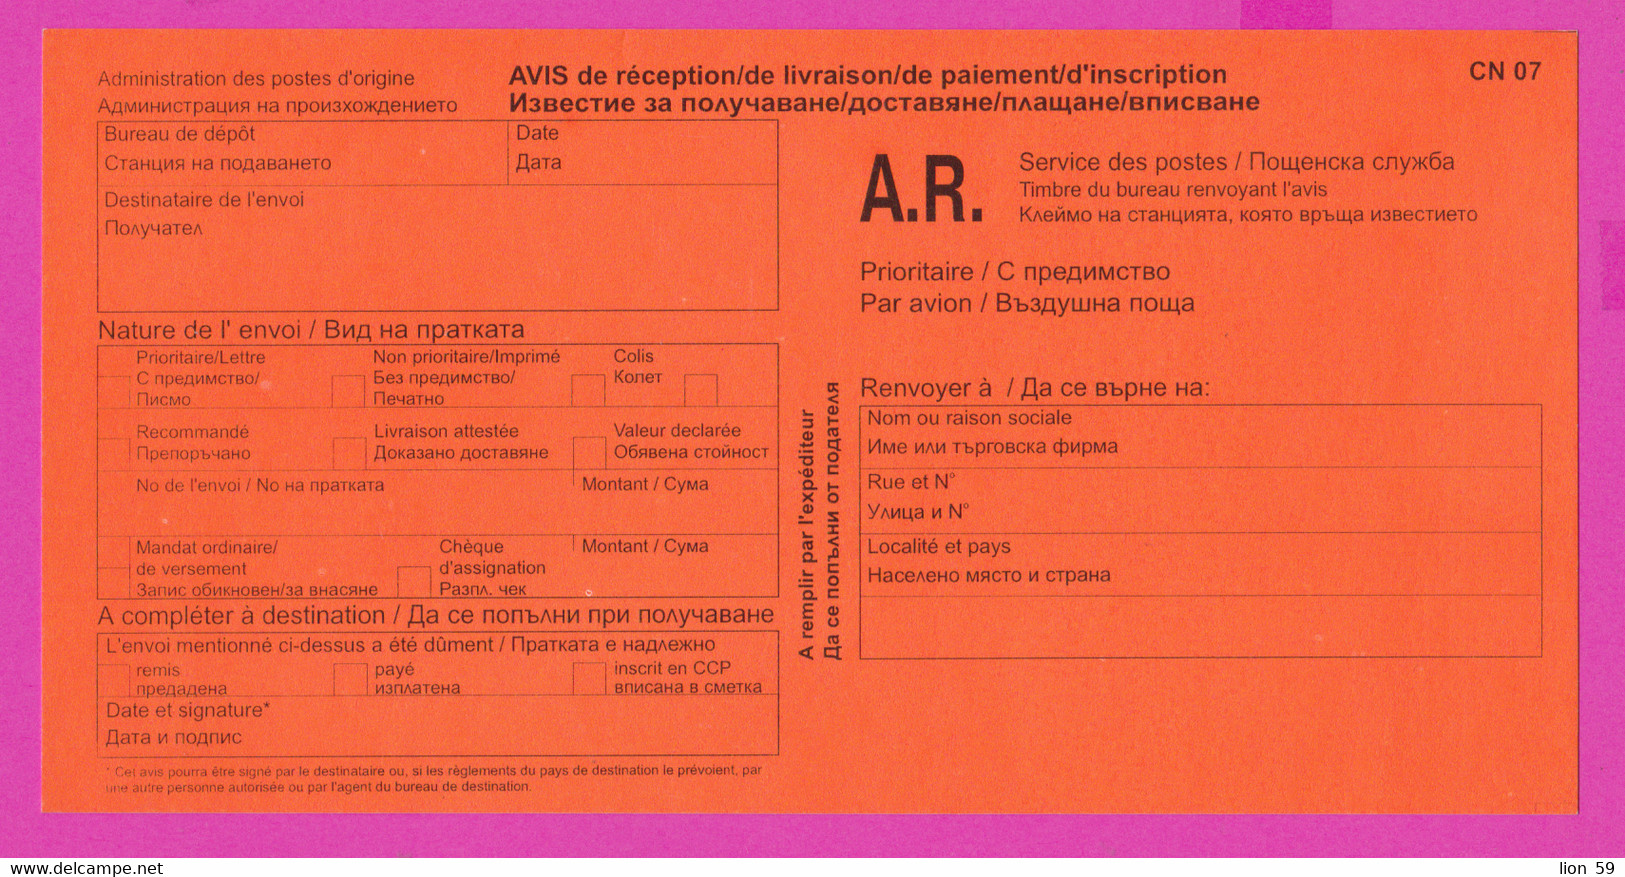 262808 / Mint Form CN 07 Bulgaria 2002 AVIS De Réception /de Livraison /de Paiement/ D'inscription Bulgarie Bulgarien - Covers & Documents